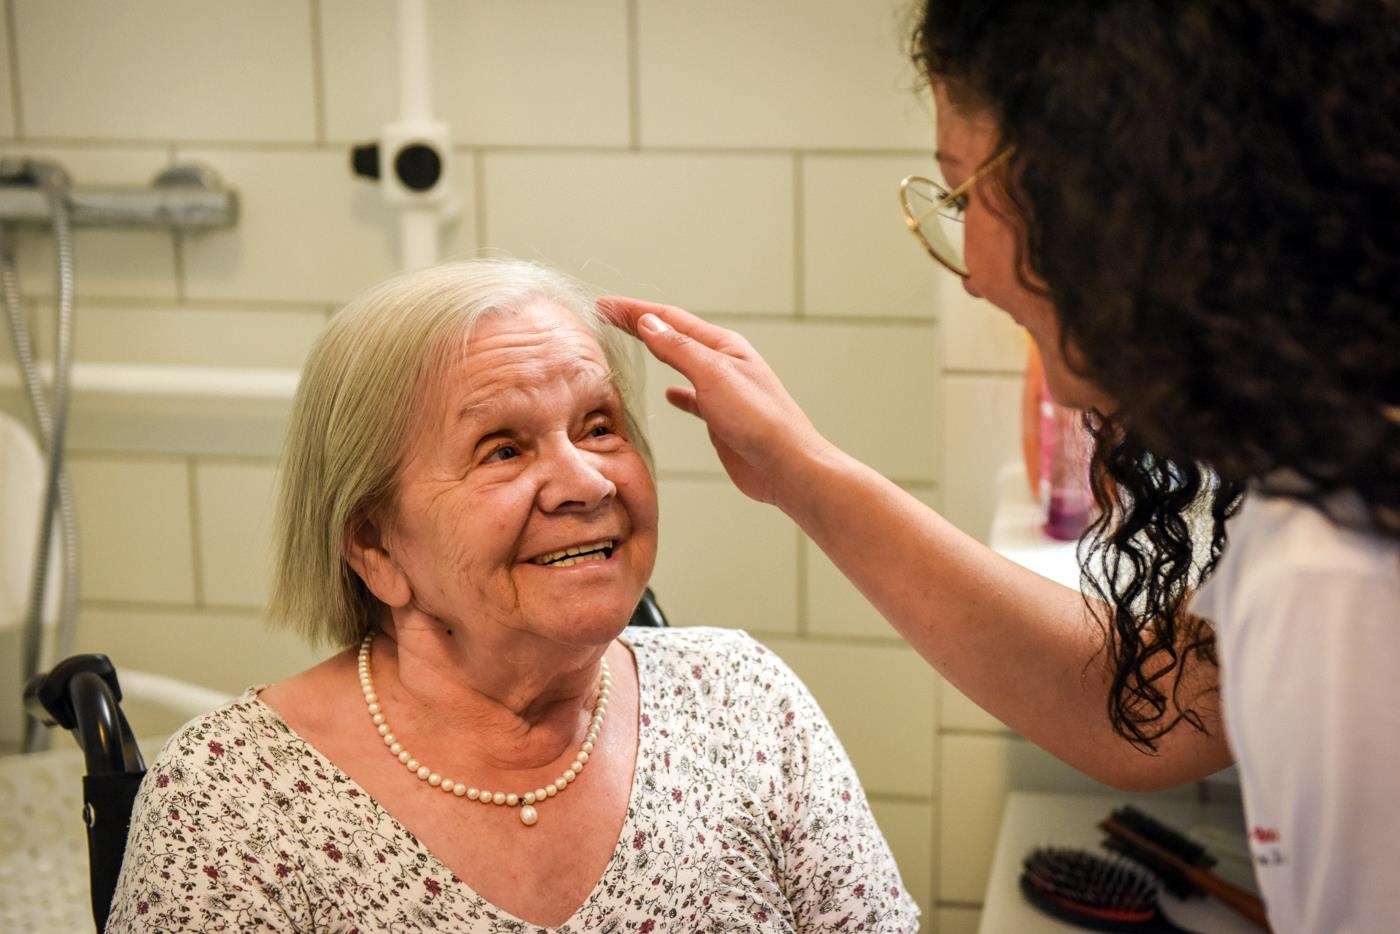 Ältere Frau mit einer Pflegekraft im Badezimmer bei der Pflege